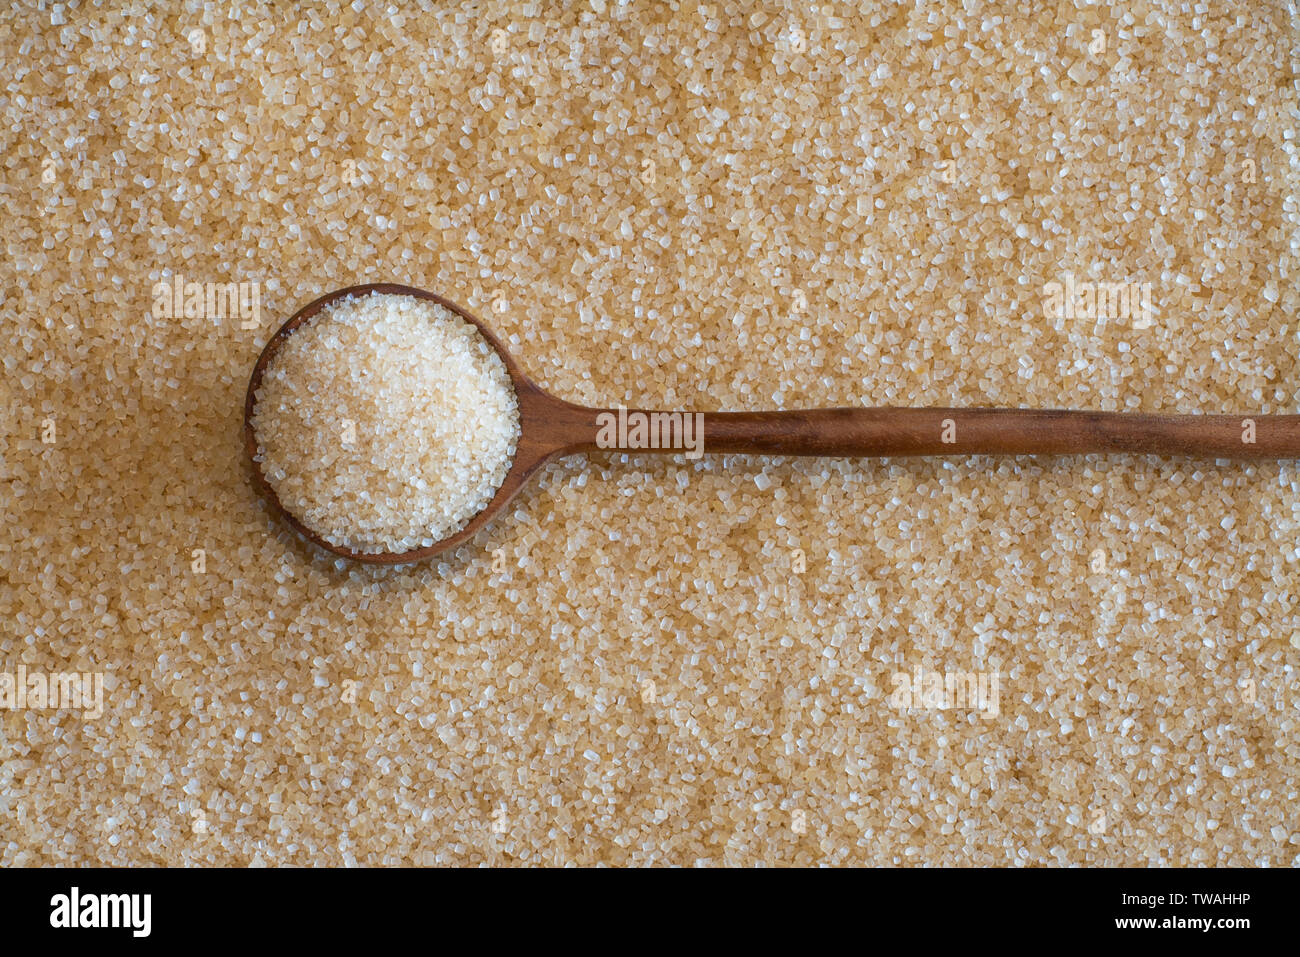 Le sucre brun, considéré comme mes nombreuses à être une alternative plus saine pour le sucre blanc, c'est couleur or foncé riche à partir de la mélasse. Banque D'Images